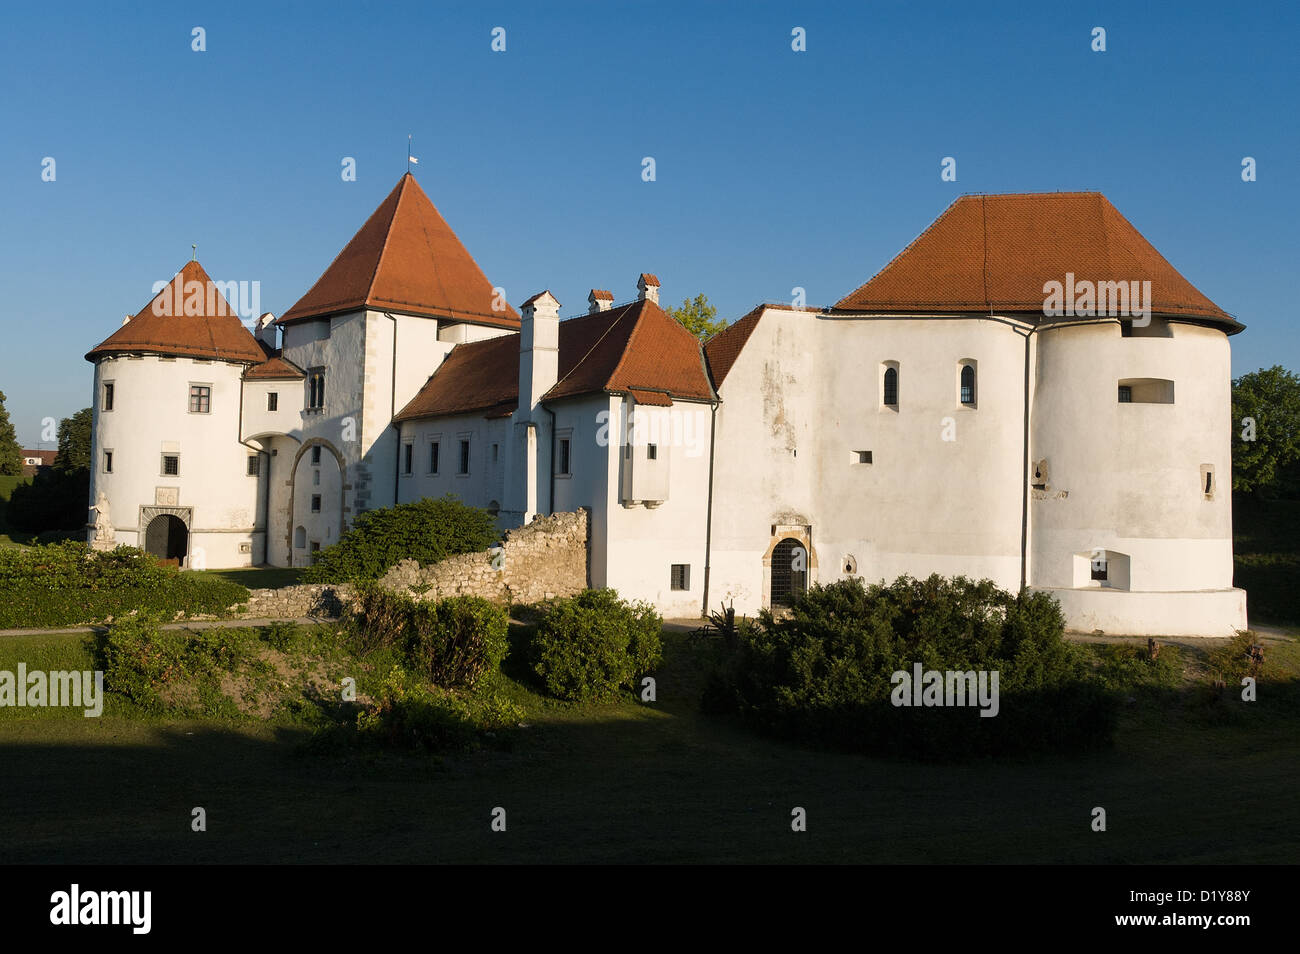 Elk192-1358, Varazdin, Croatie Stari Grad (vieille ville) Musée, forteresse, 14e-15e c Banque D'Images